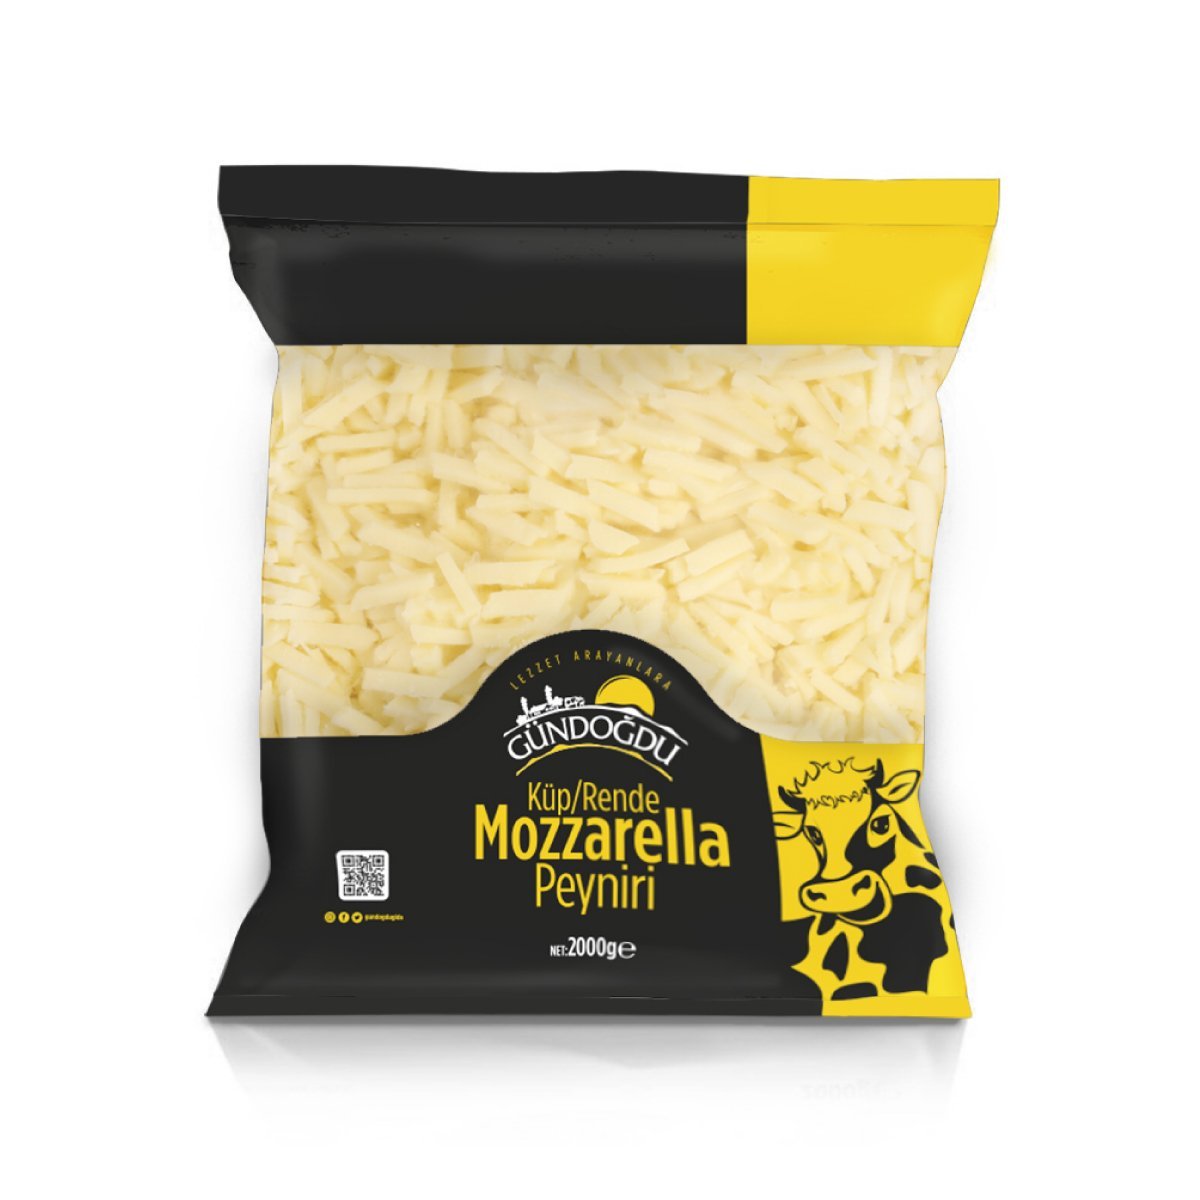 Gündoğdu Mozzarella Peyniri Küp/Şerit 2000gr Ekonomik Paket